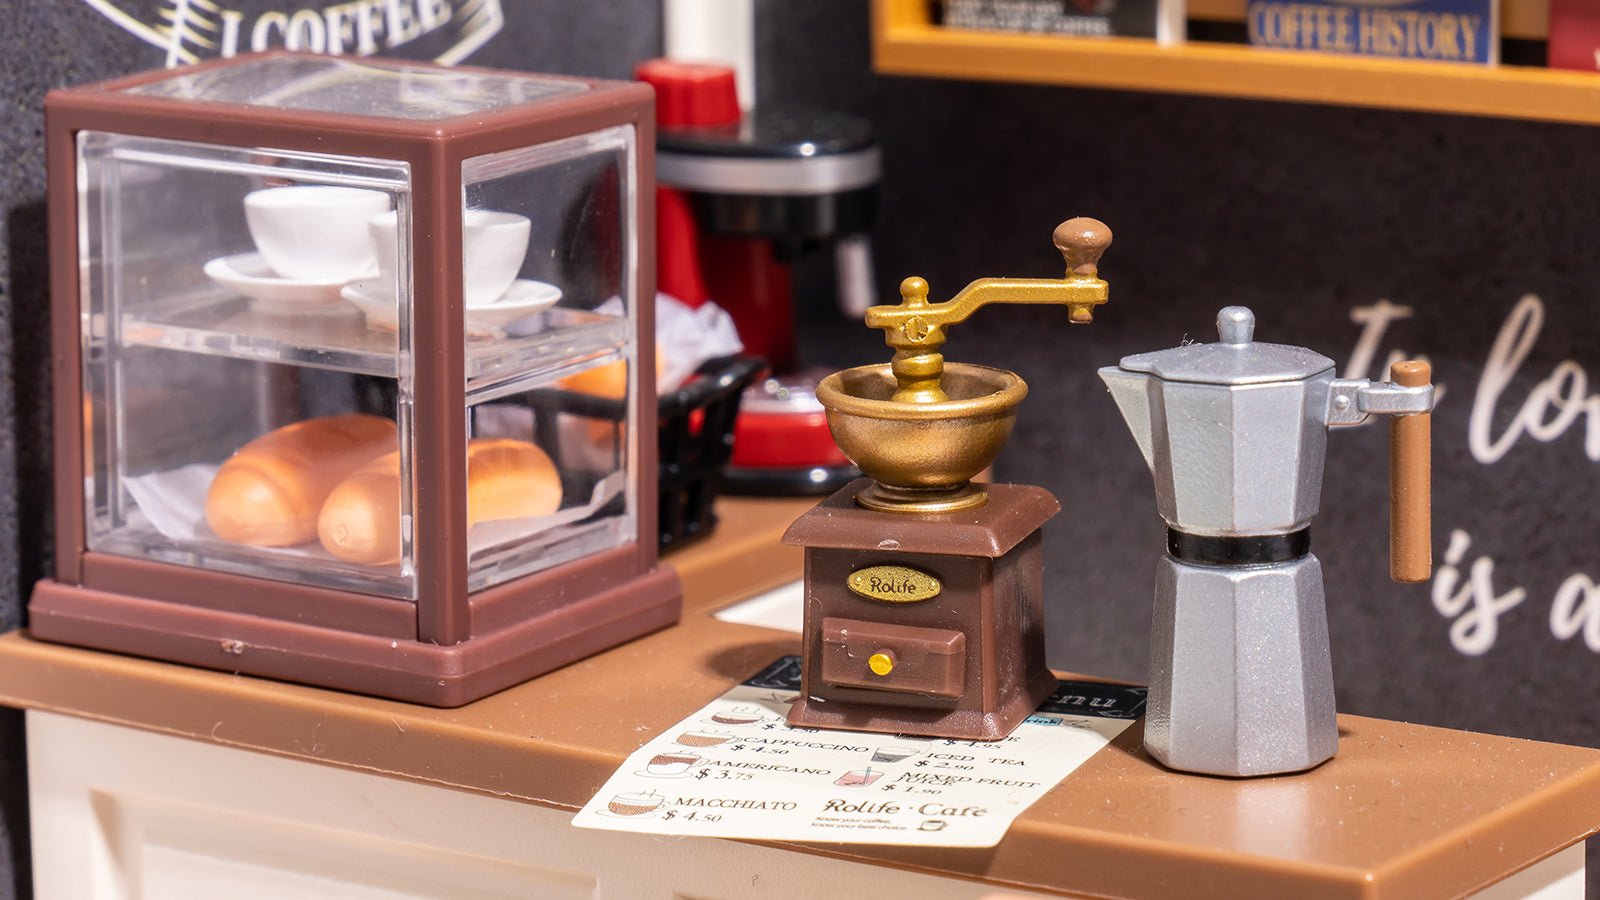 Daily Inspiration Cafe Super Creator DIY Miniature Set - DIYative™